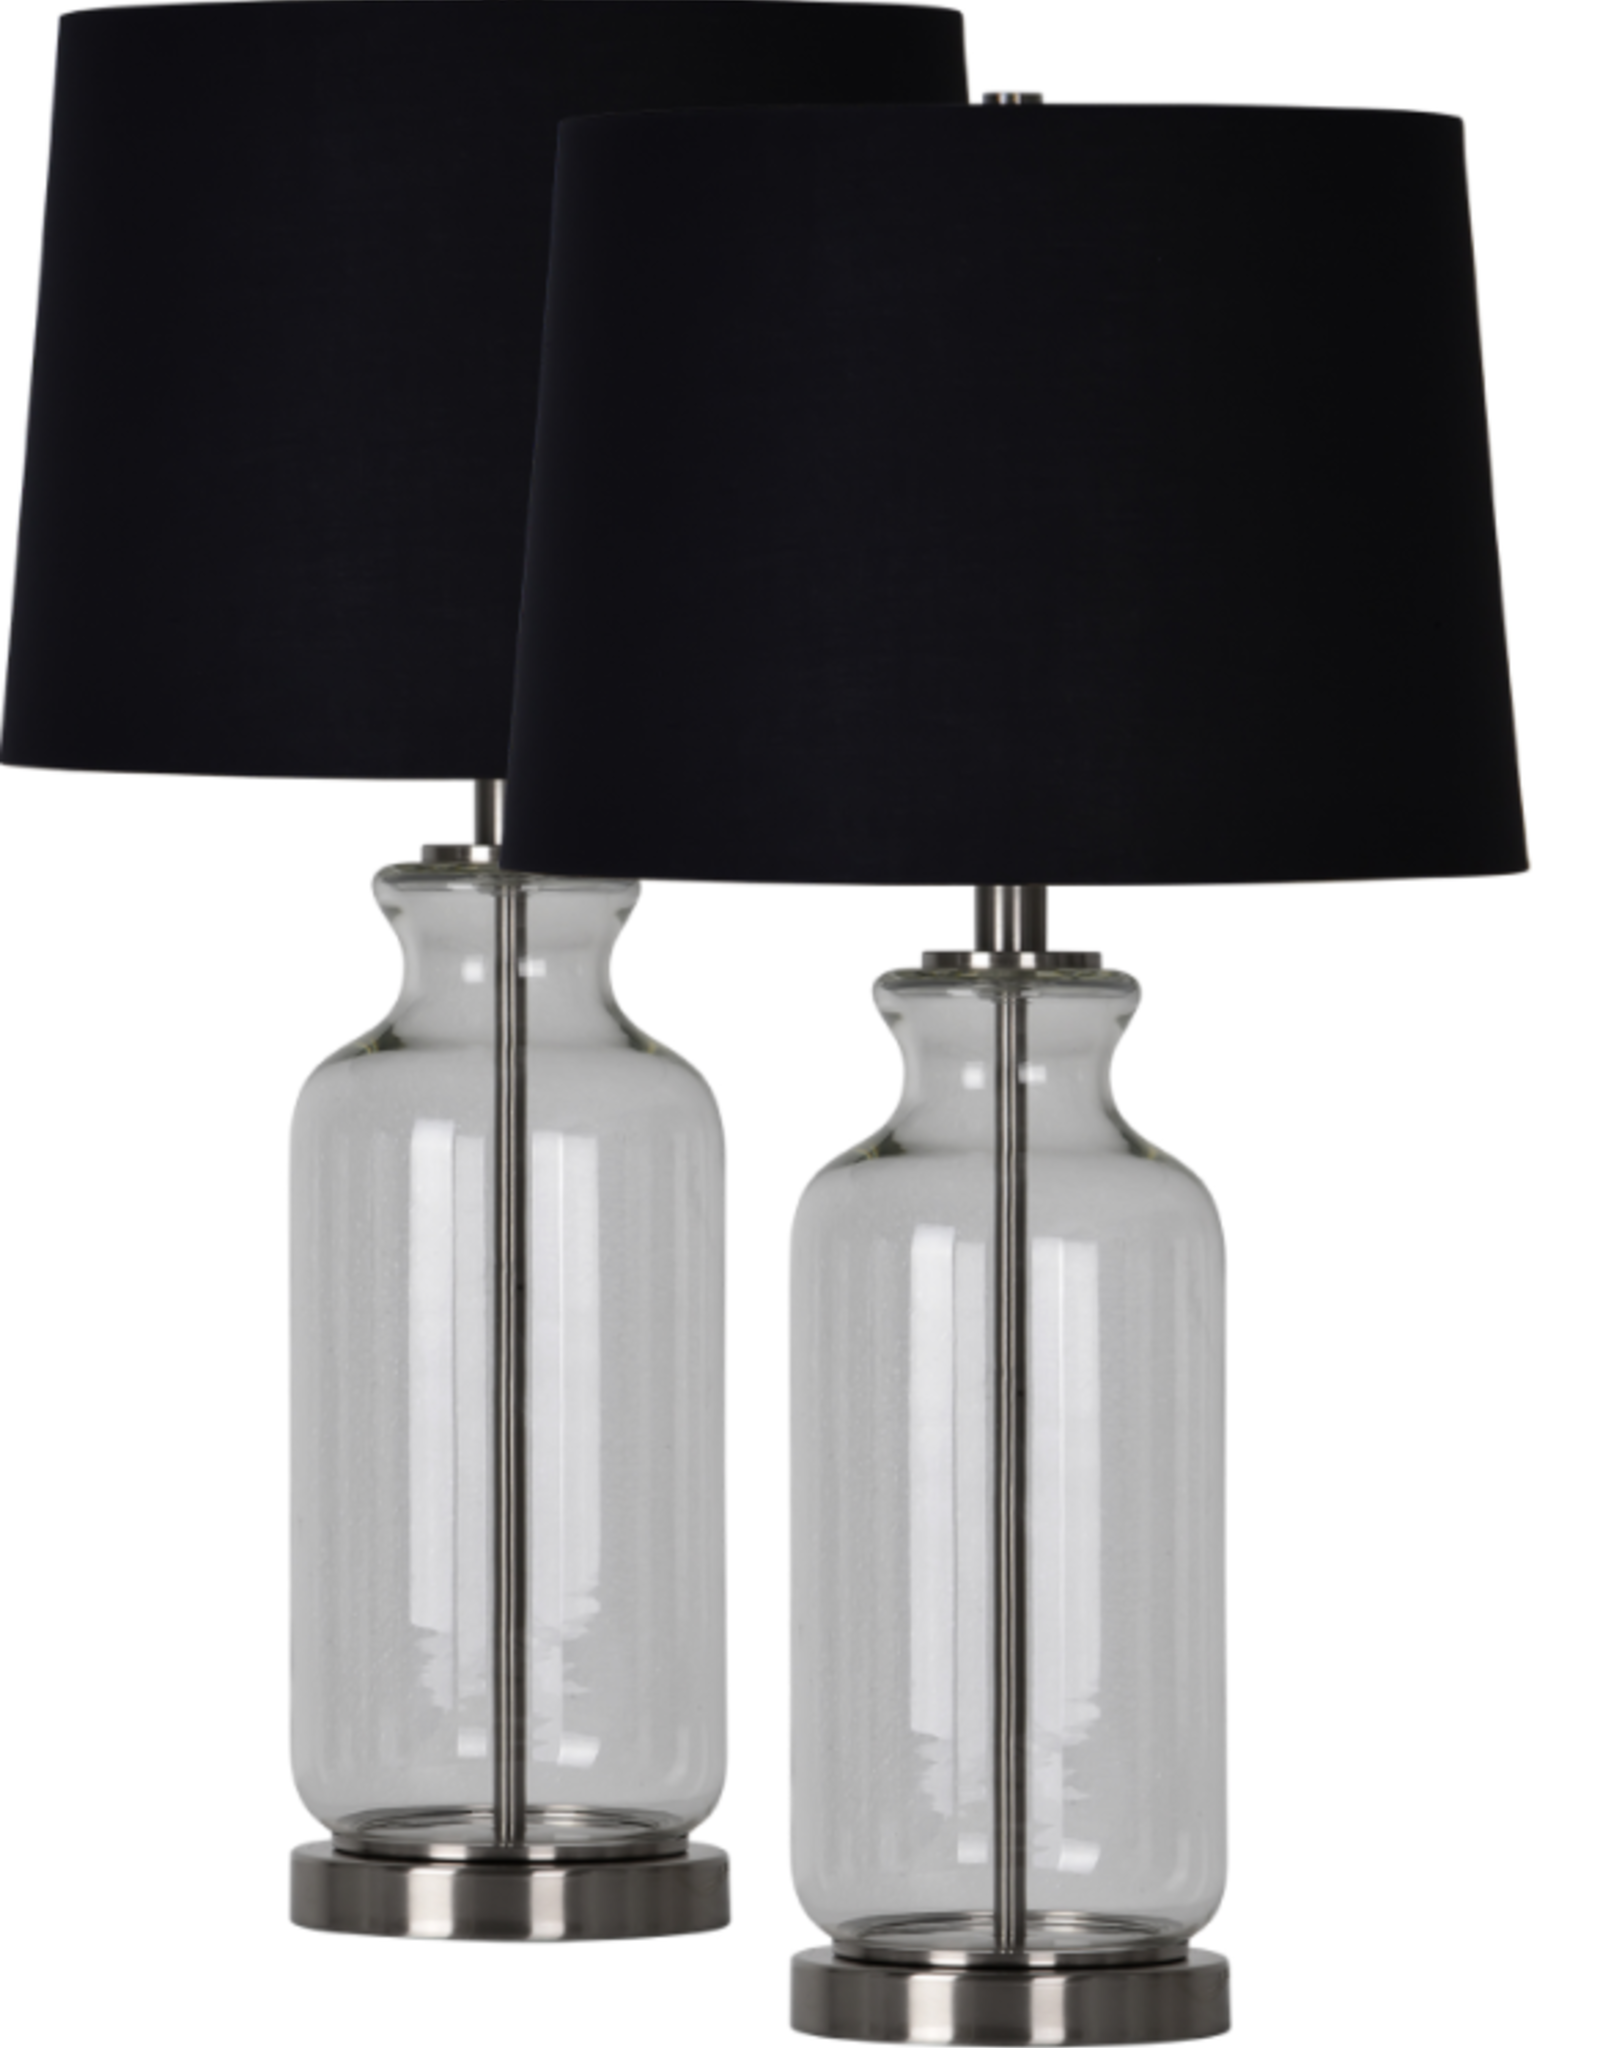 Lampe de table transparante-verre-fer-nickel satiné-abat jour en coton noir